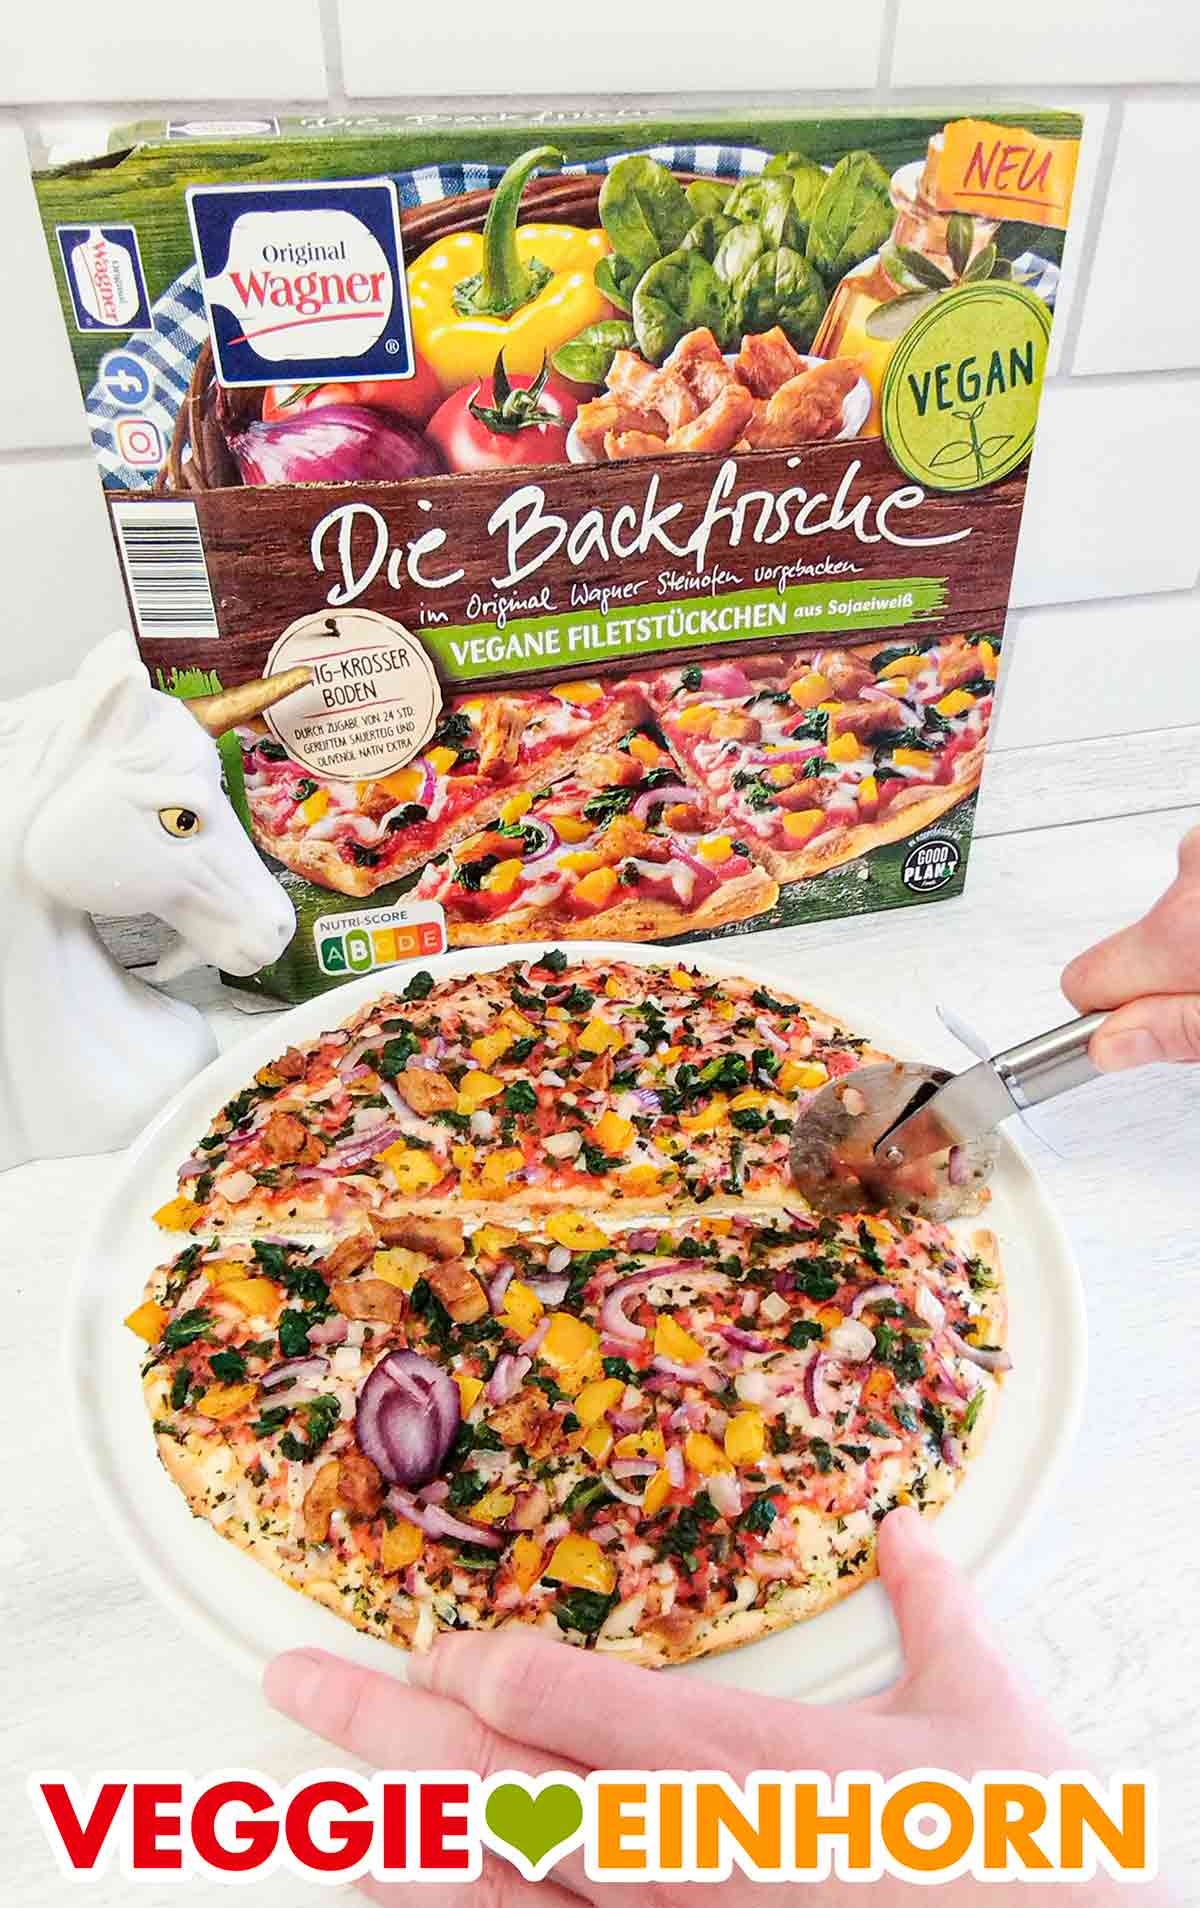 Die Backfrische Pizza mit veganen Filetstückchen von Wagner wird mit dem Pizzaroller geschnitten